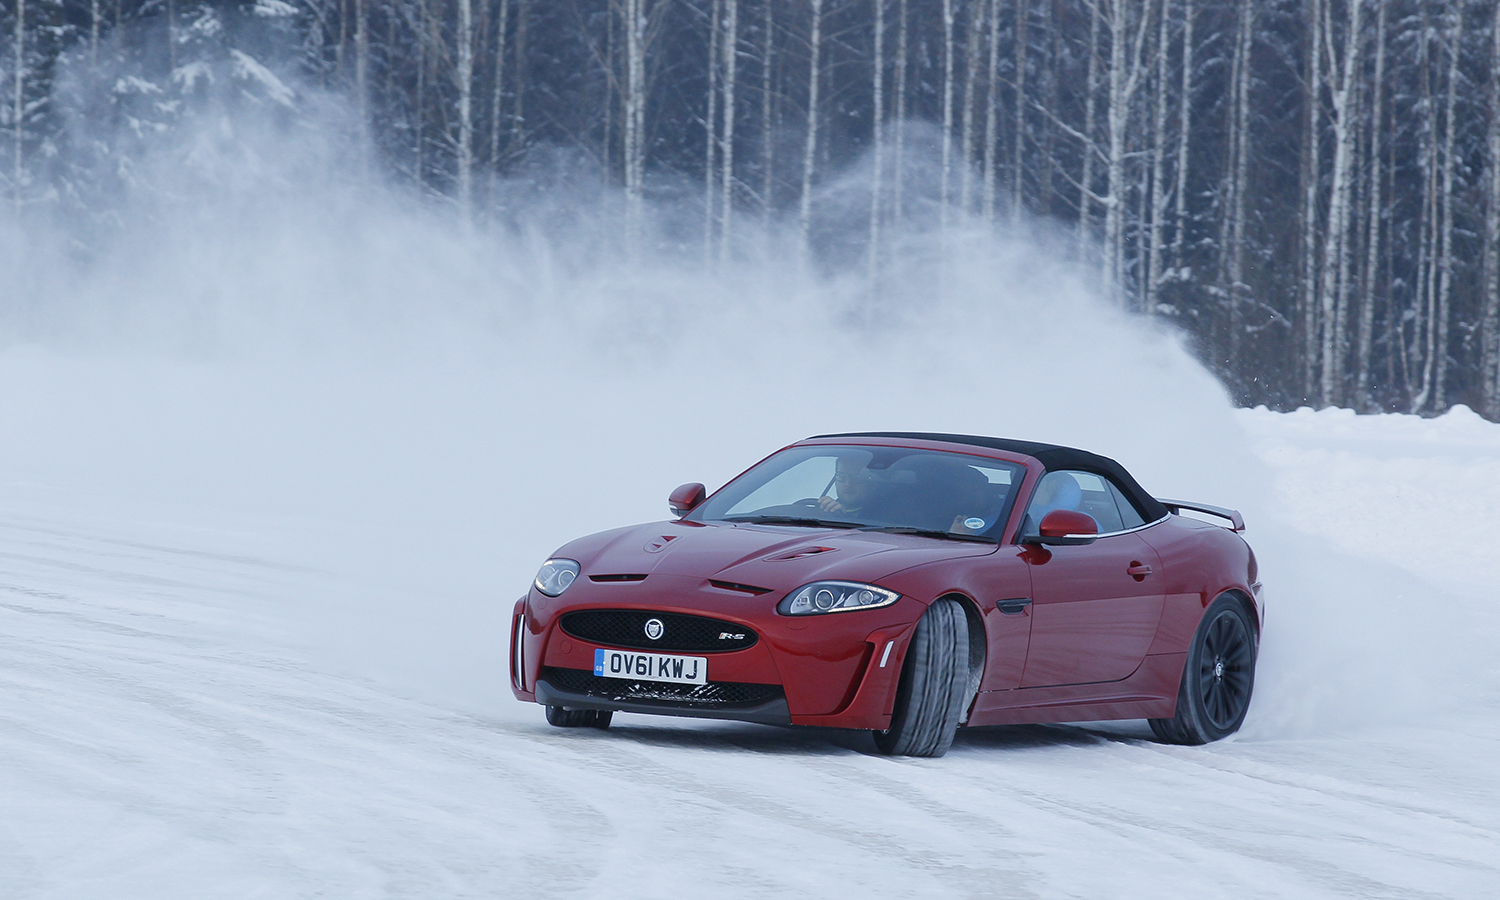 Helping Jaguar roar… on ice